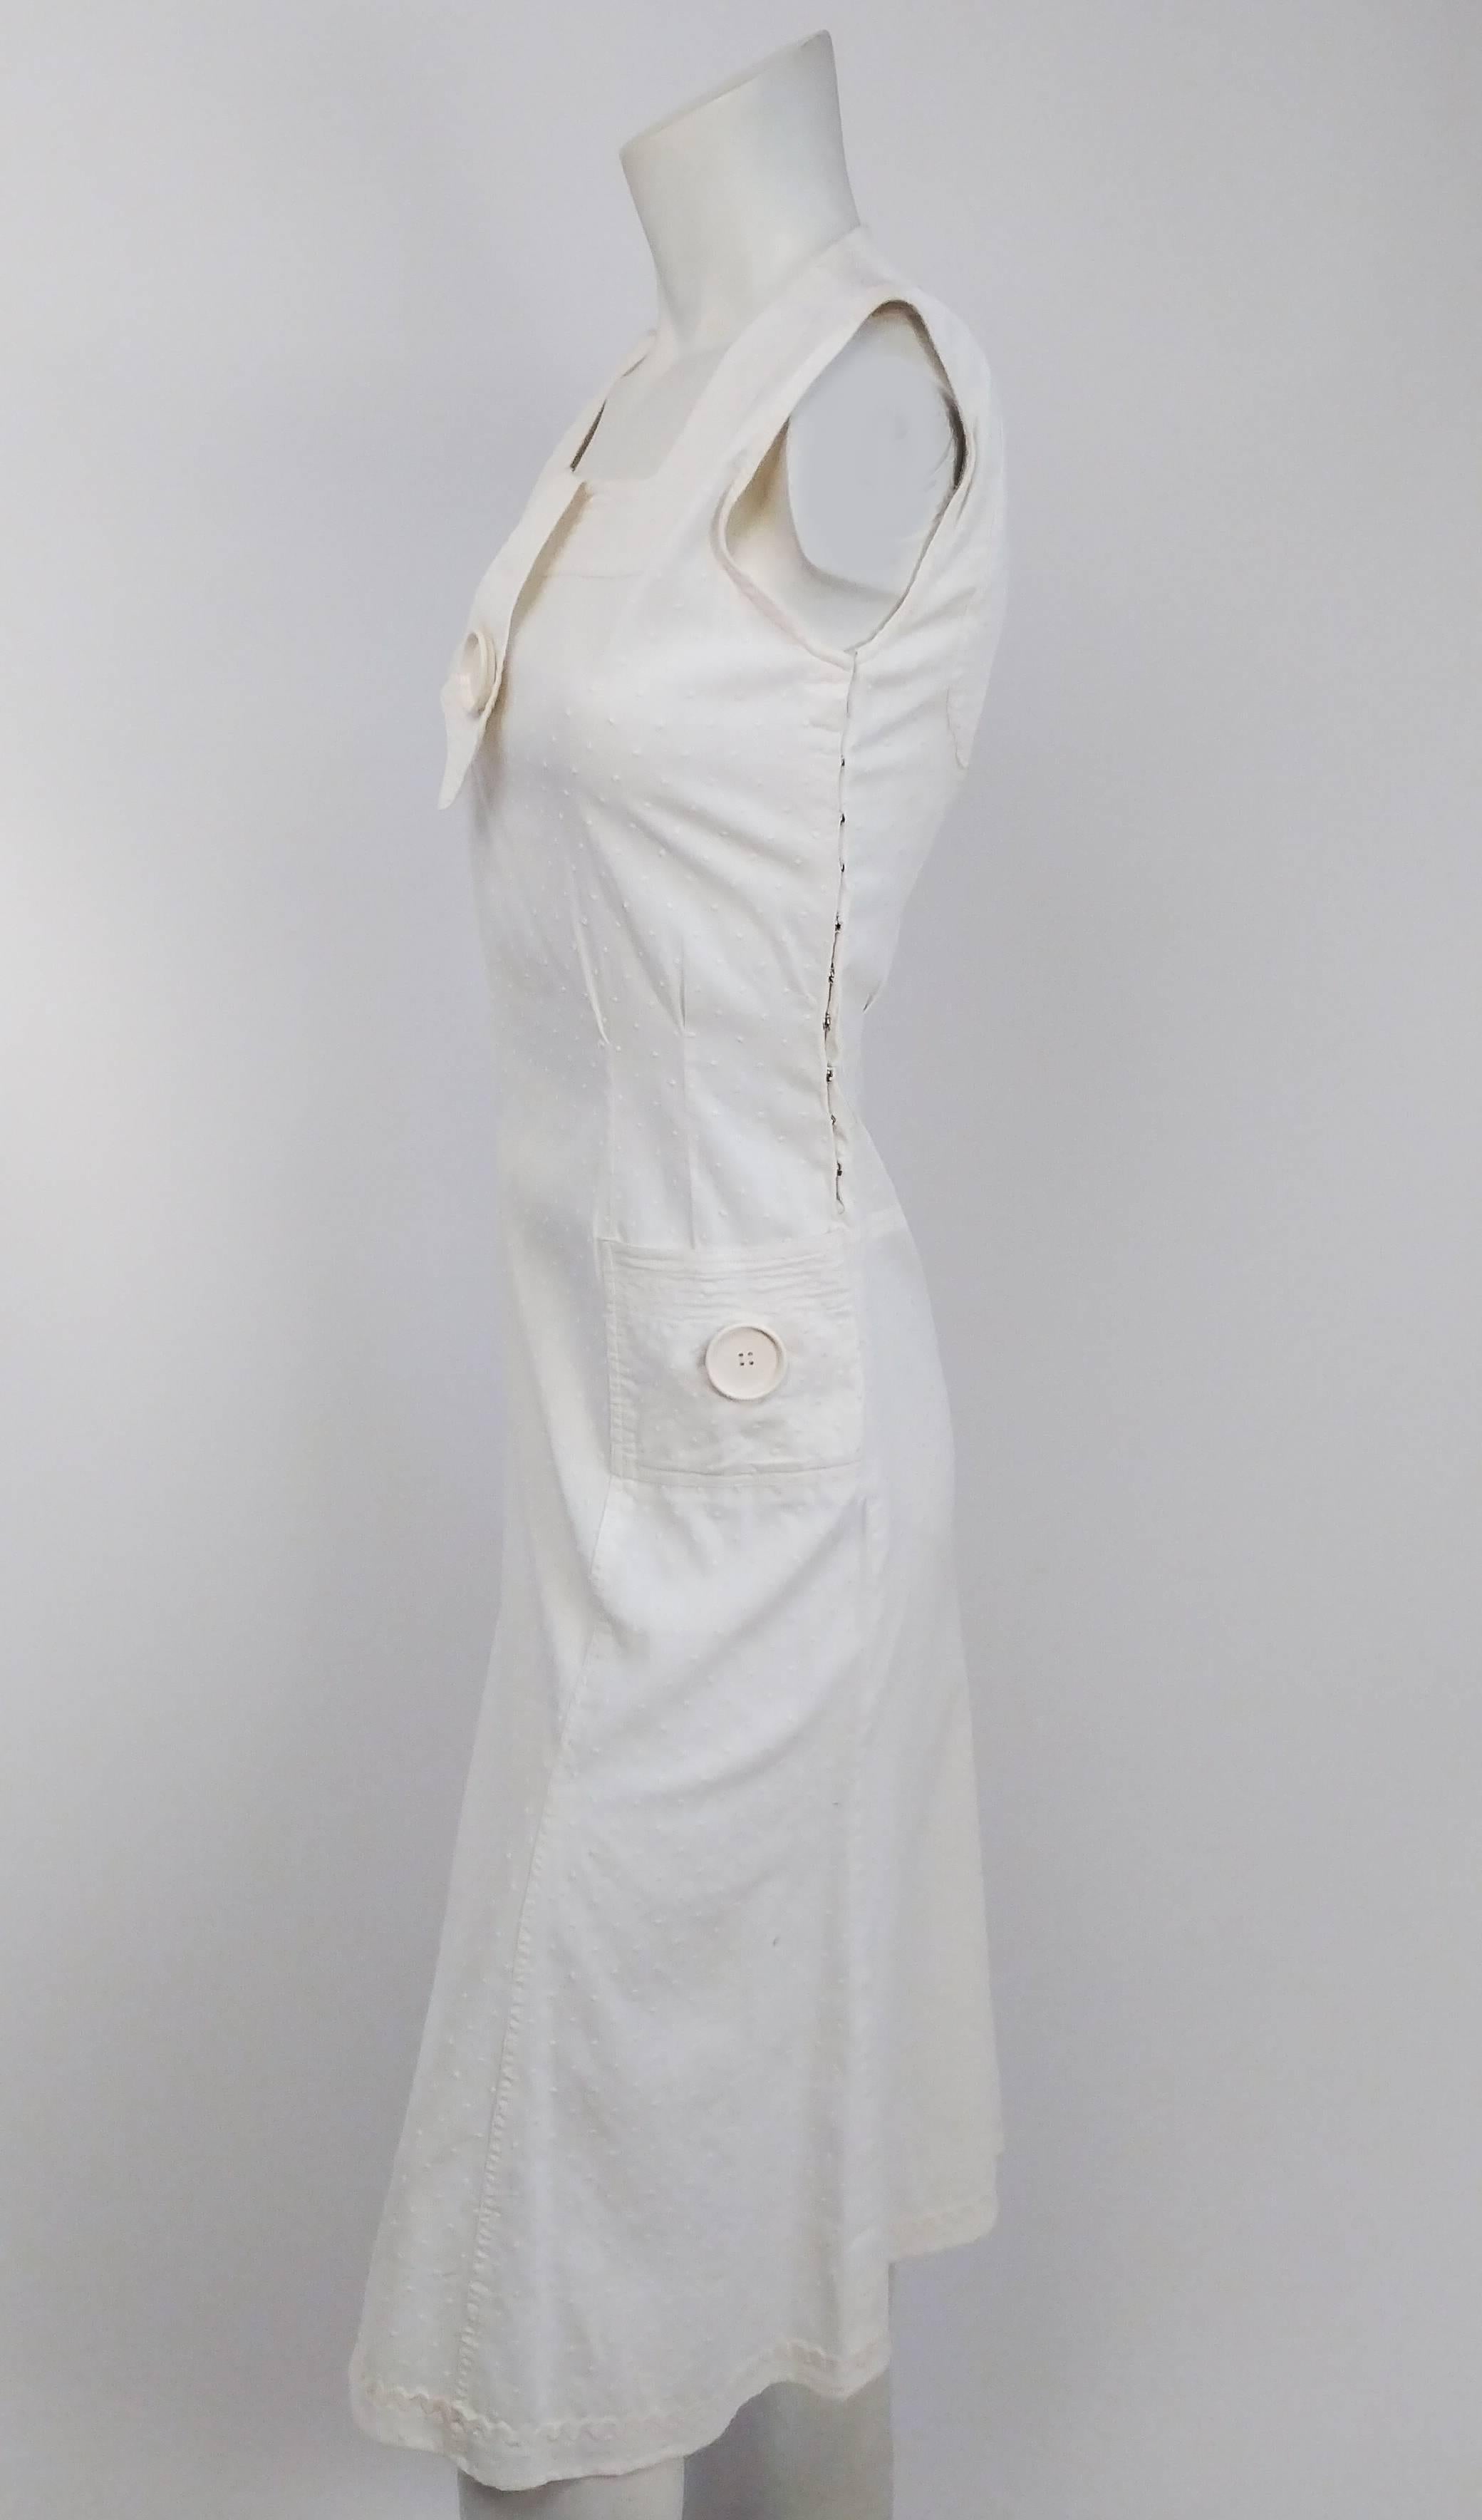 robe de jour à pois blancs suisses des années 1920 avec de gros boutons. Fermeture par bouton-pression sur le côté. Fausse cravate au cou avec gros bouton. Deux poches carrées avec boutons assortis. Découpe dans le dos. Garniture Rick rack à